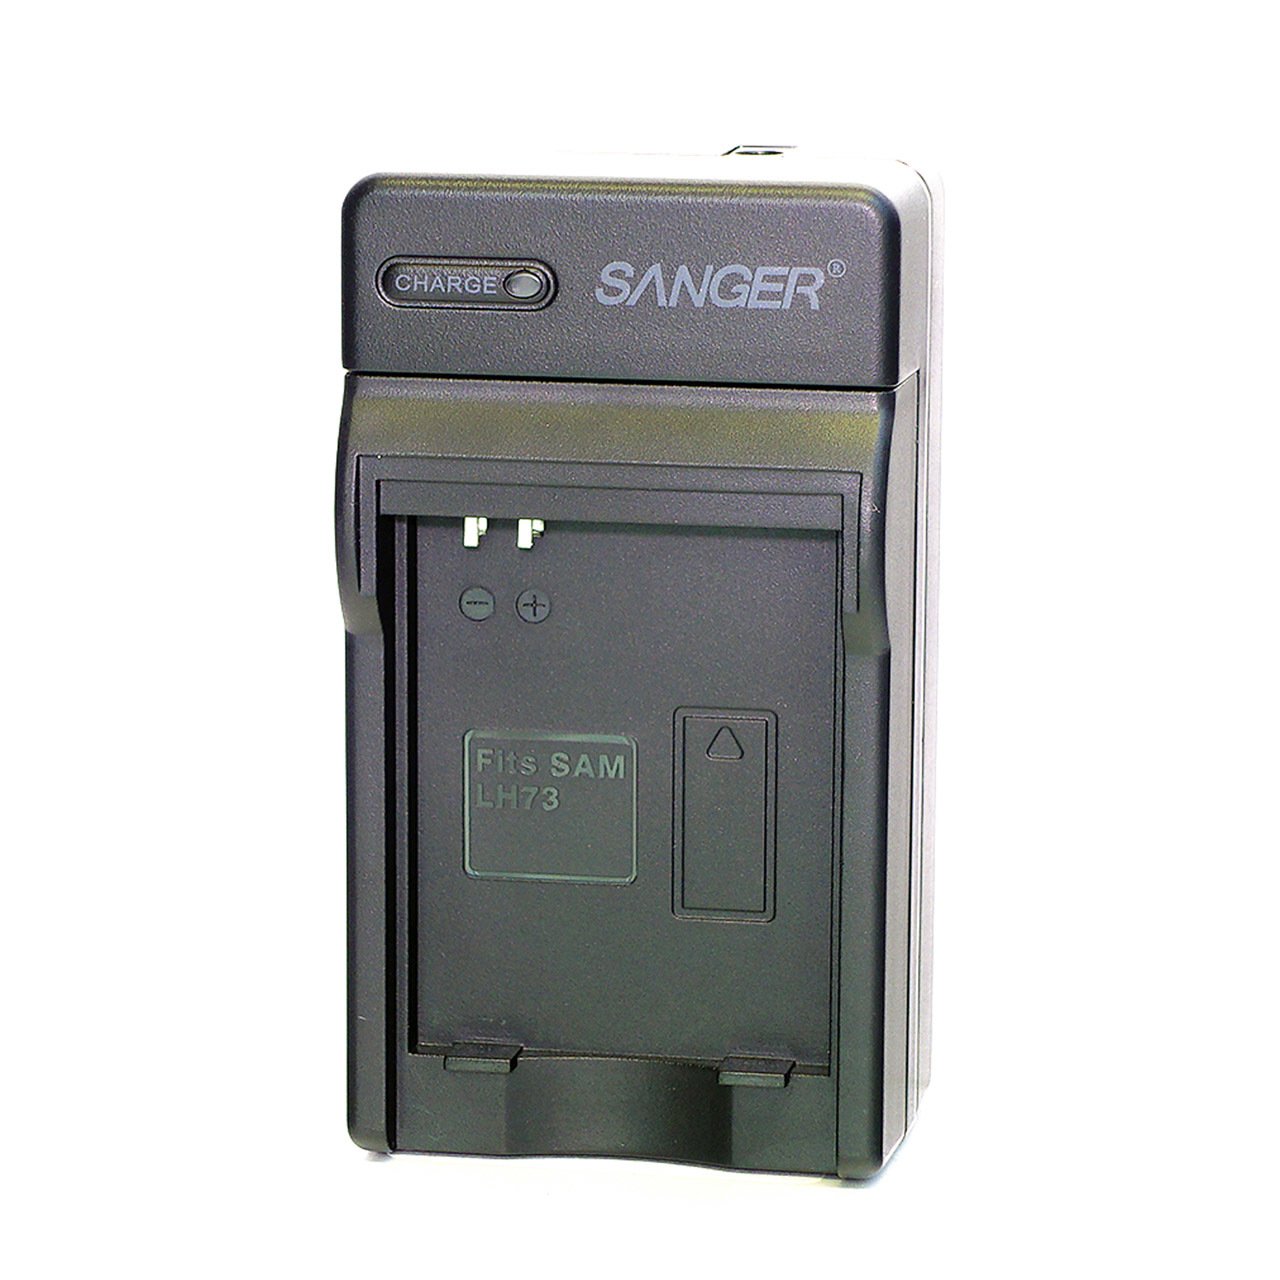 Sanger SB-LH73 Samsung Video Kamera Batarya Şarj Aleti